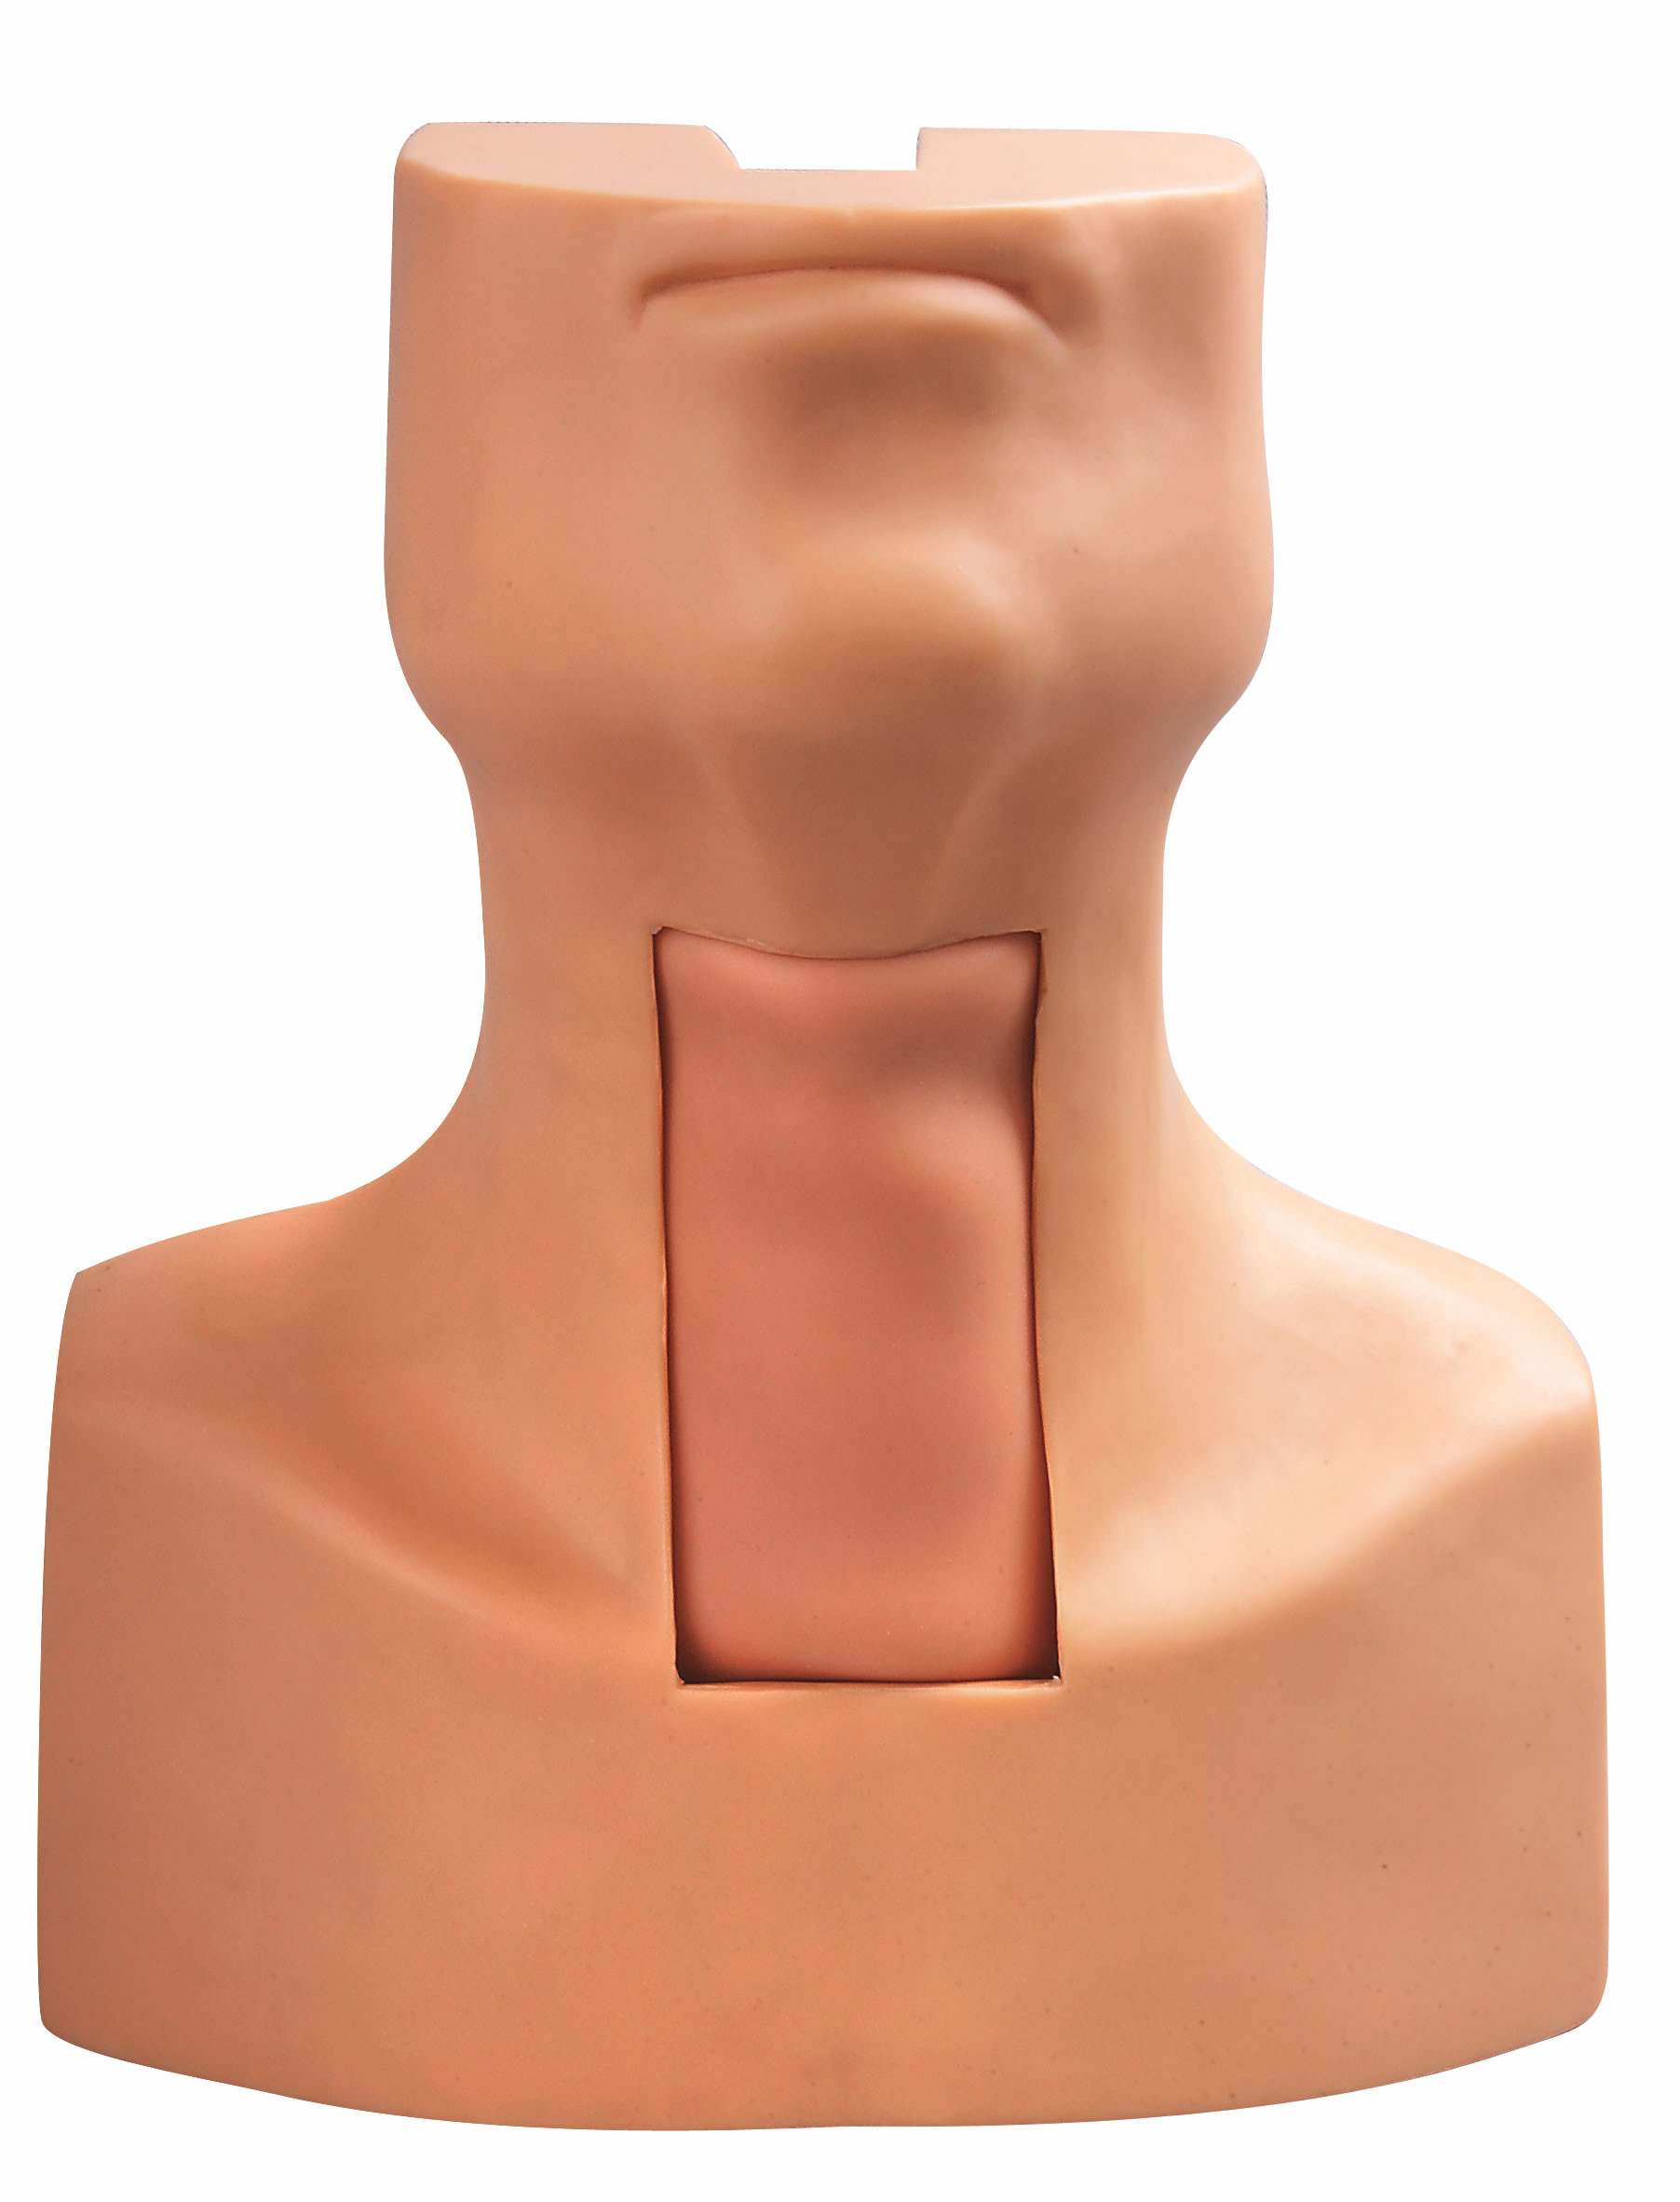 훈련을 위한 가장된 기관과 목 피부를 가진 Tracheostomy 빵꾸 삽관법 모형